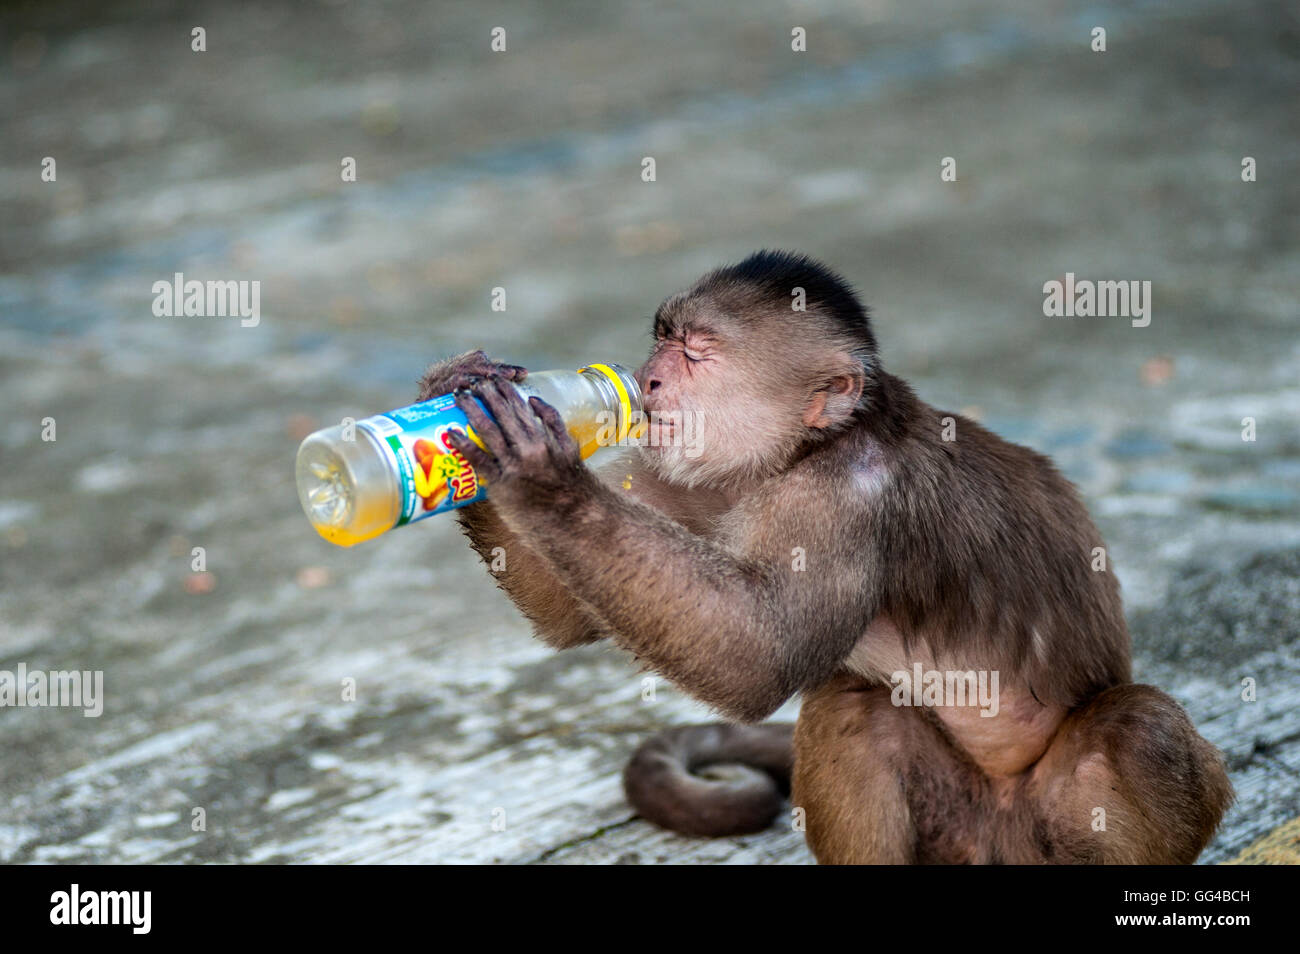 Capuchin monkey from the urban colony, Misahualli, Napo province, Ecuador Stock Photo